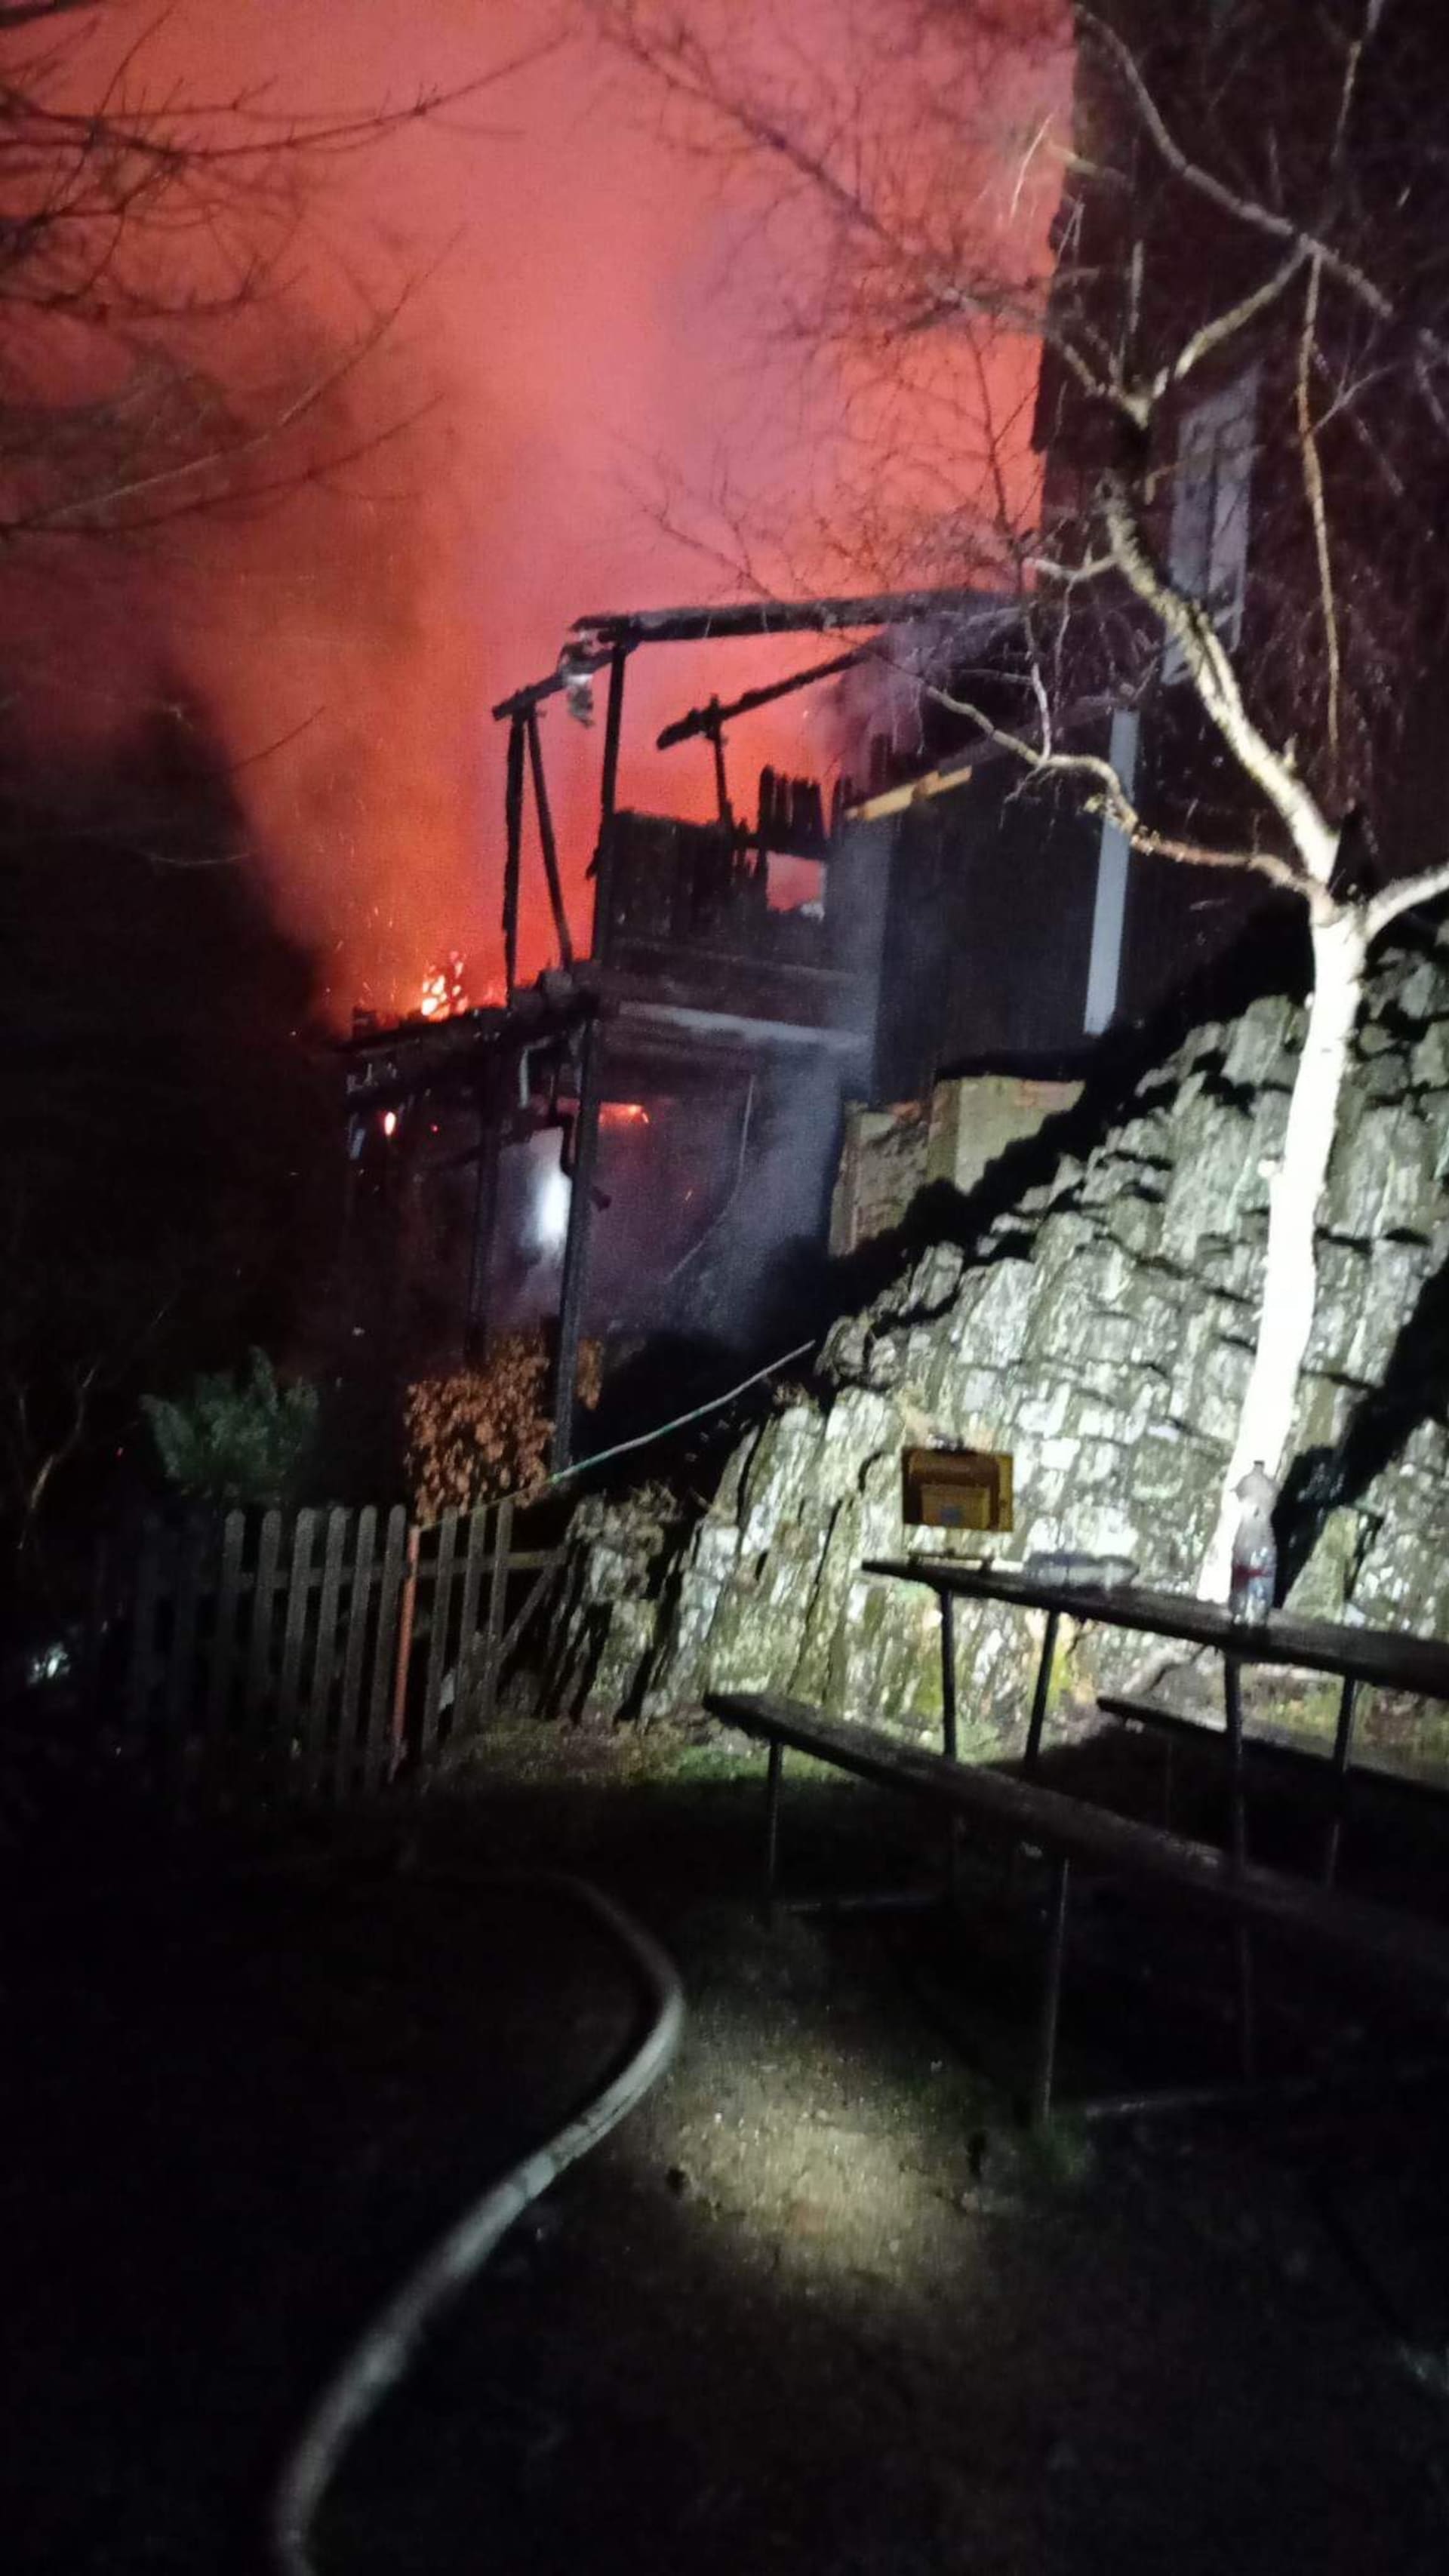 Sedm jednotek hasičů vyjelo v 2:31 k požáru domku u vyhlídky na Vlčí hoře. Požár zasáhl i vyhlídkovou věž.